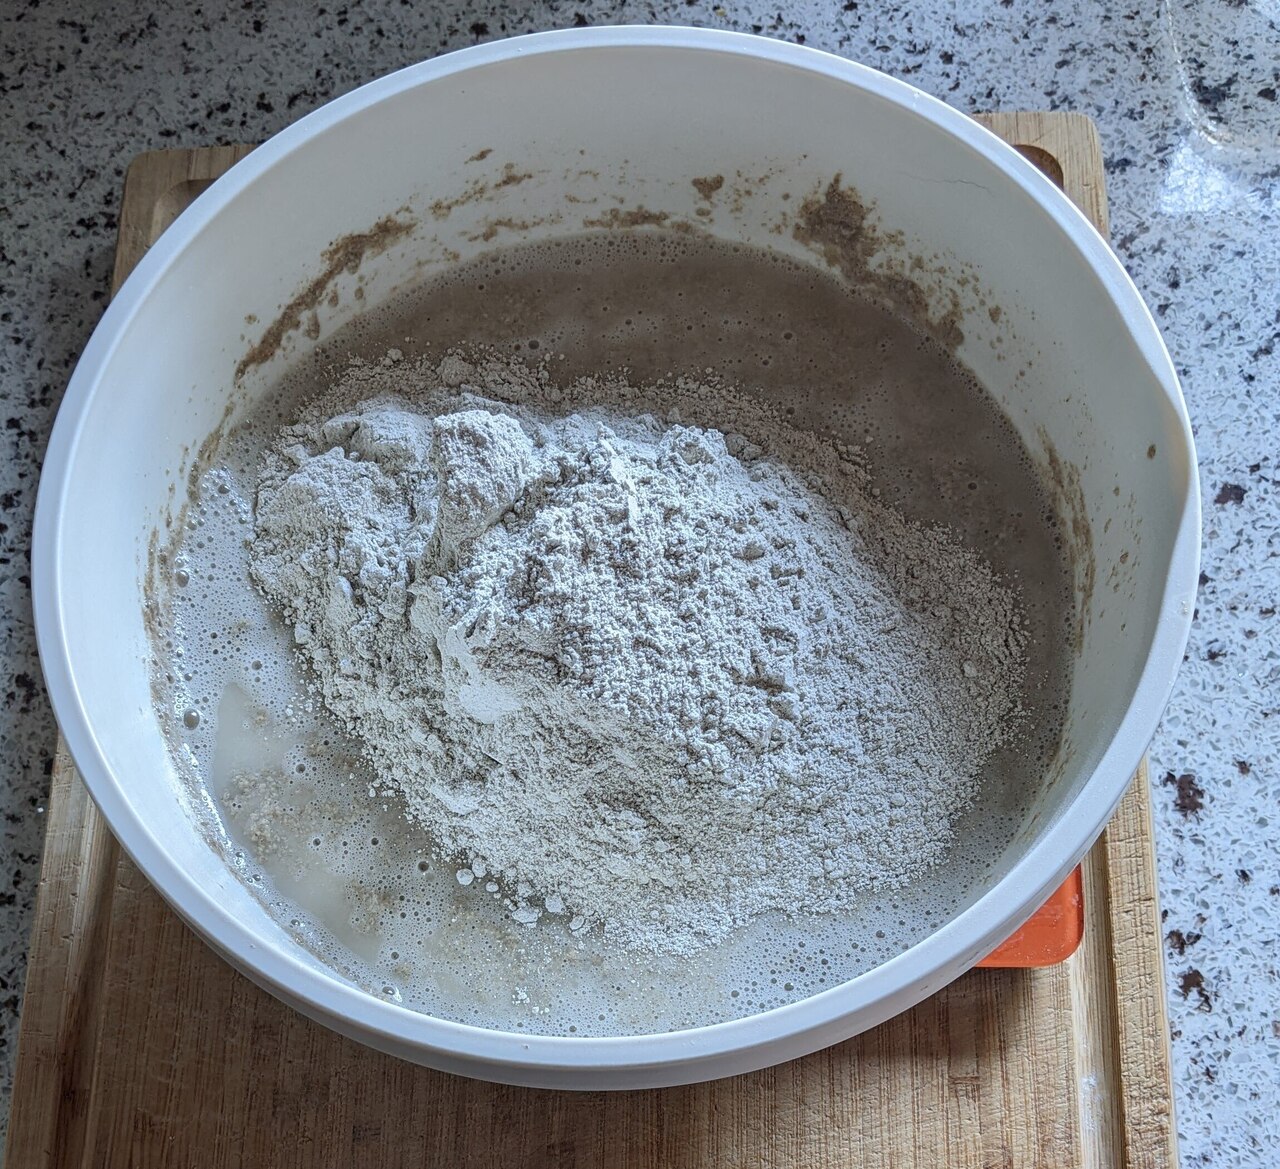 Add rye flour